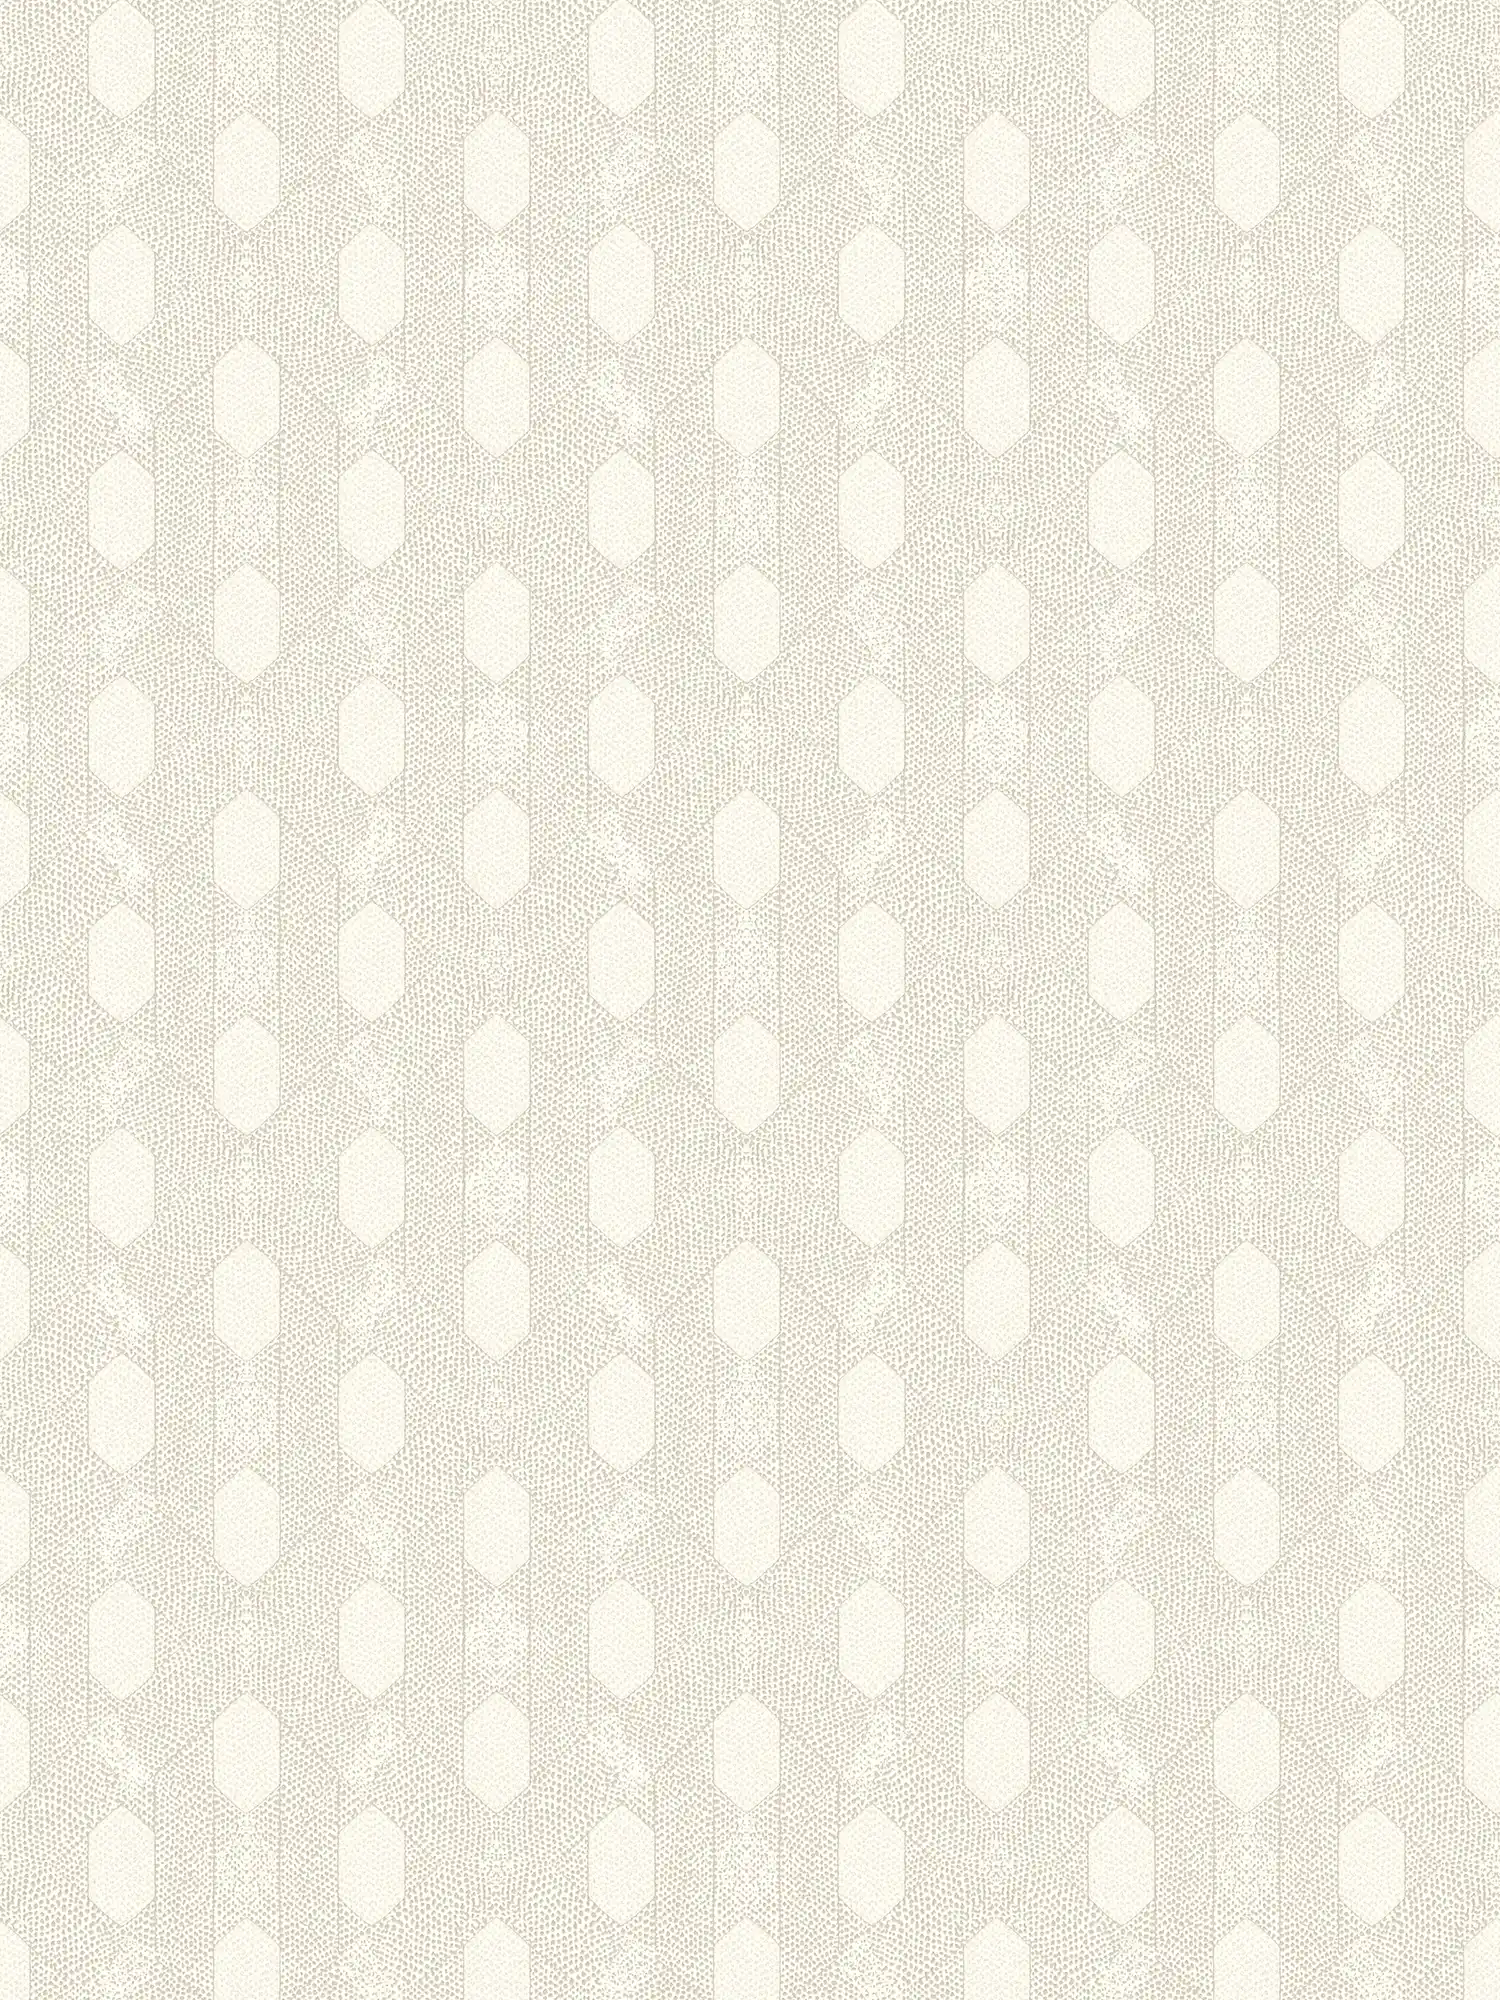             Papel pintado no tejido con diseño de puntos geométricos - gris, dorado, crema
        